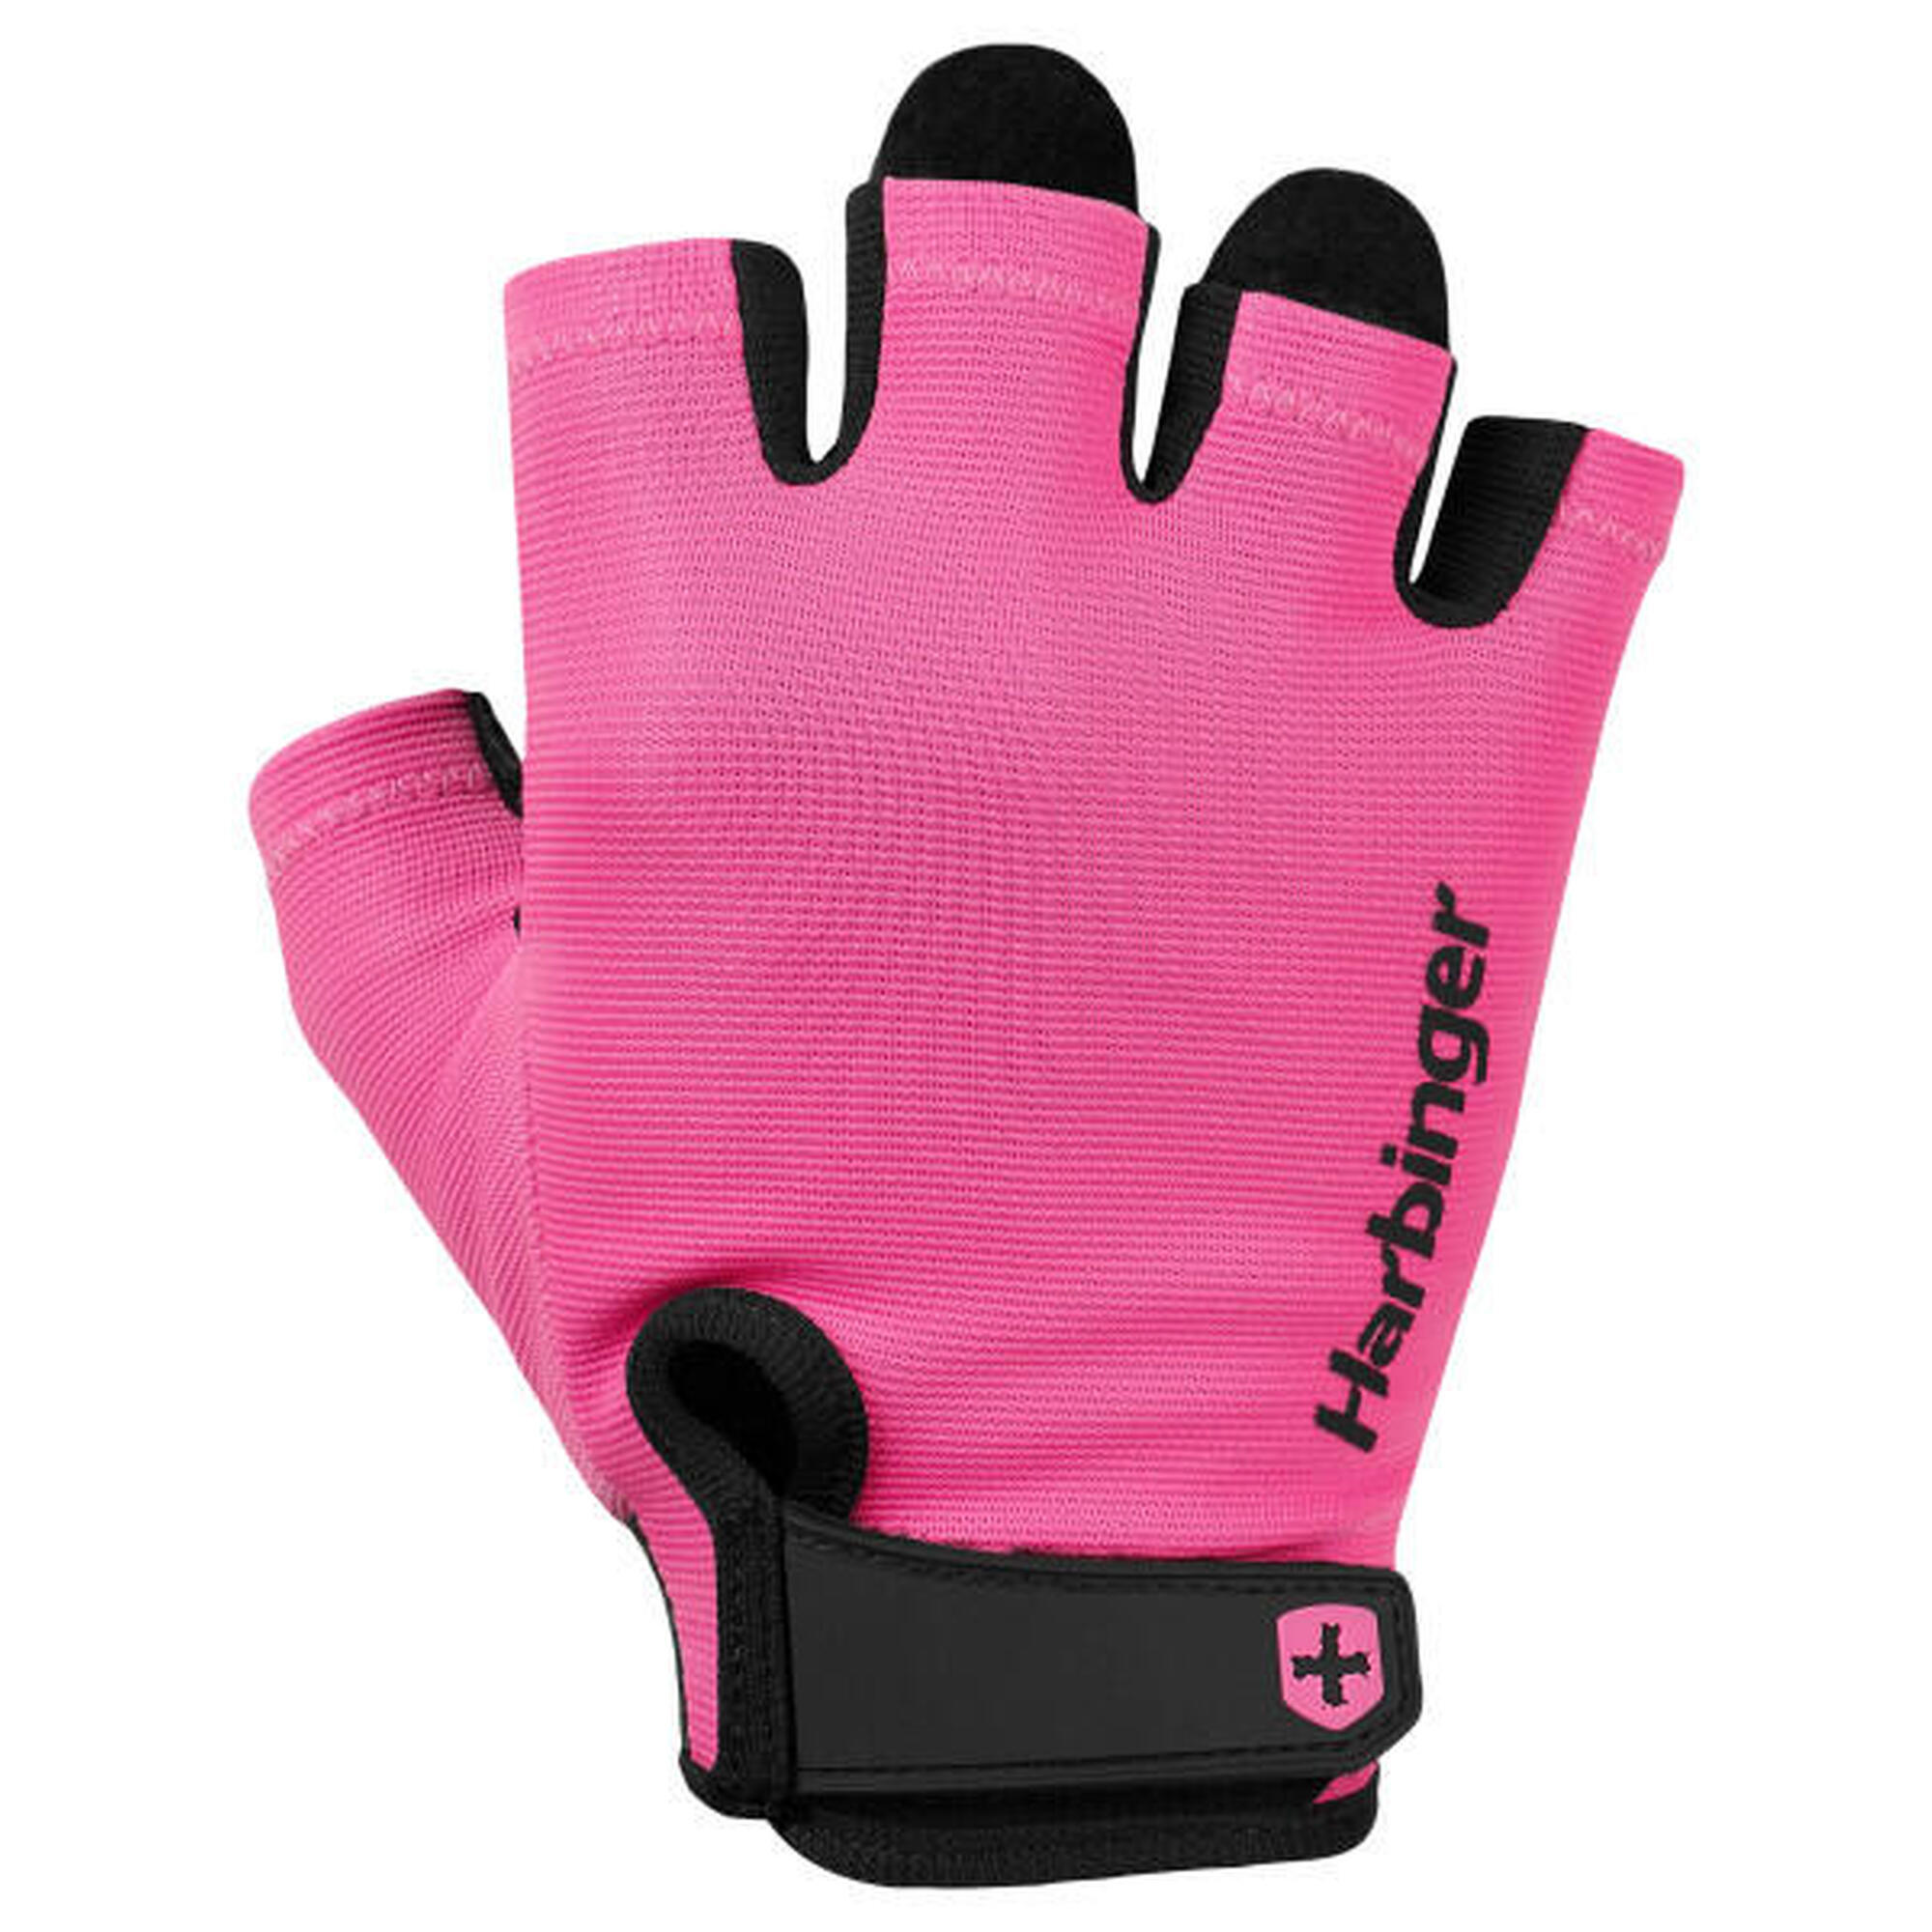 Harbinger Handschuh in Pink für Frauen für idealen Trainingskomfort Größe XS